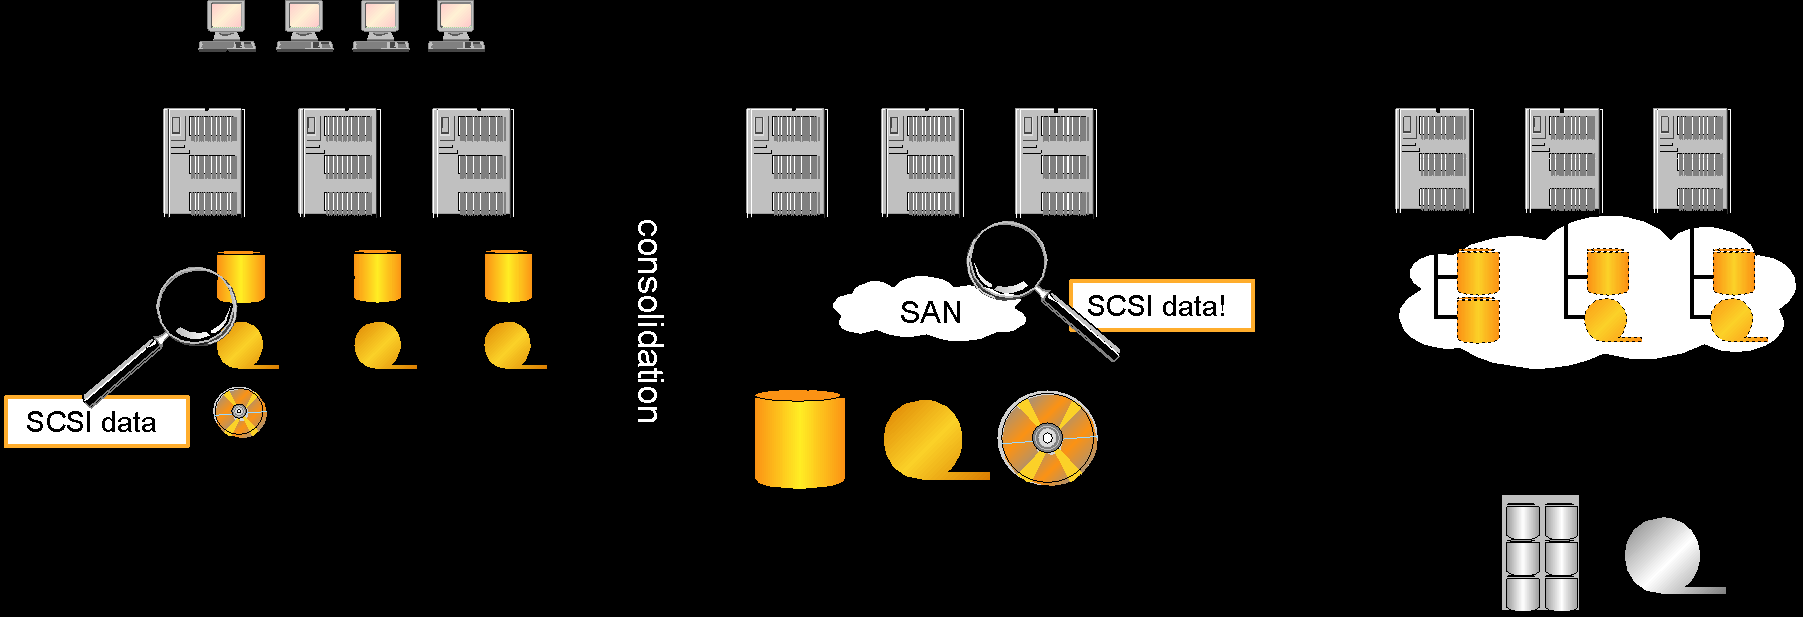 SAN - Storage Area Network Adattároló hálózat, adatforgalomra dedikált hálózat A tároló eszközök az egyes szerverektől fizikailag elválnak, több szerver